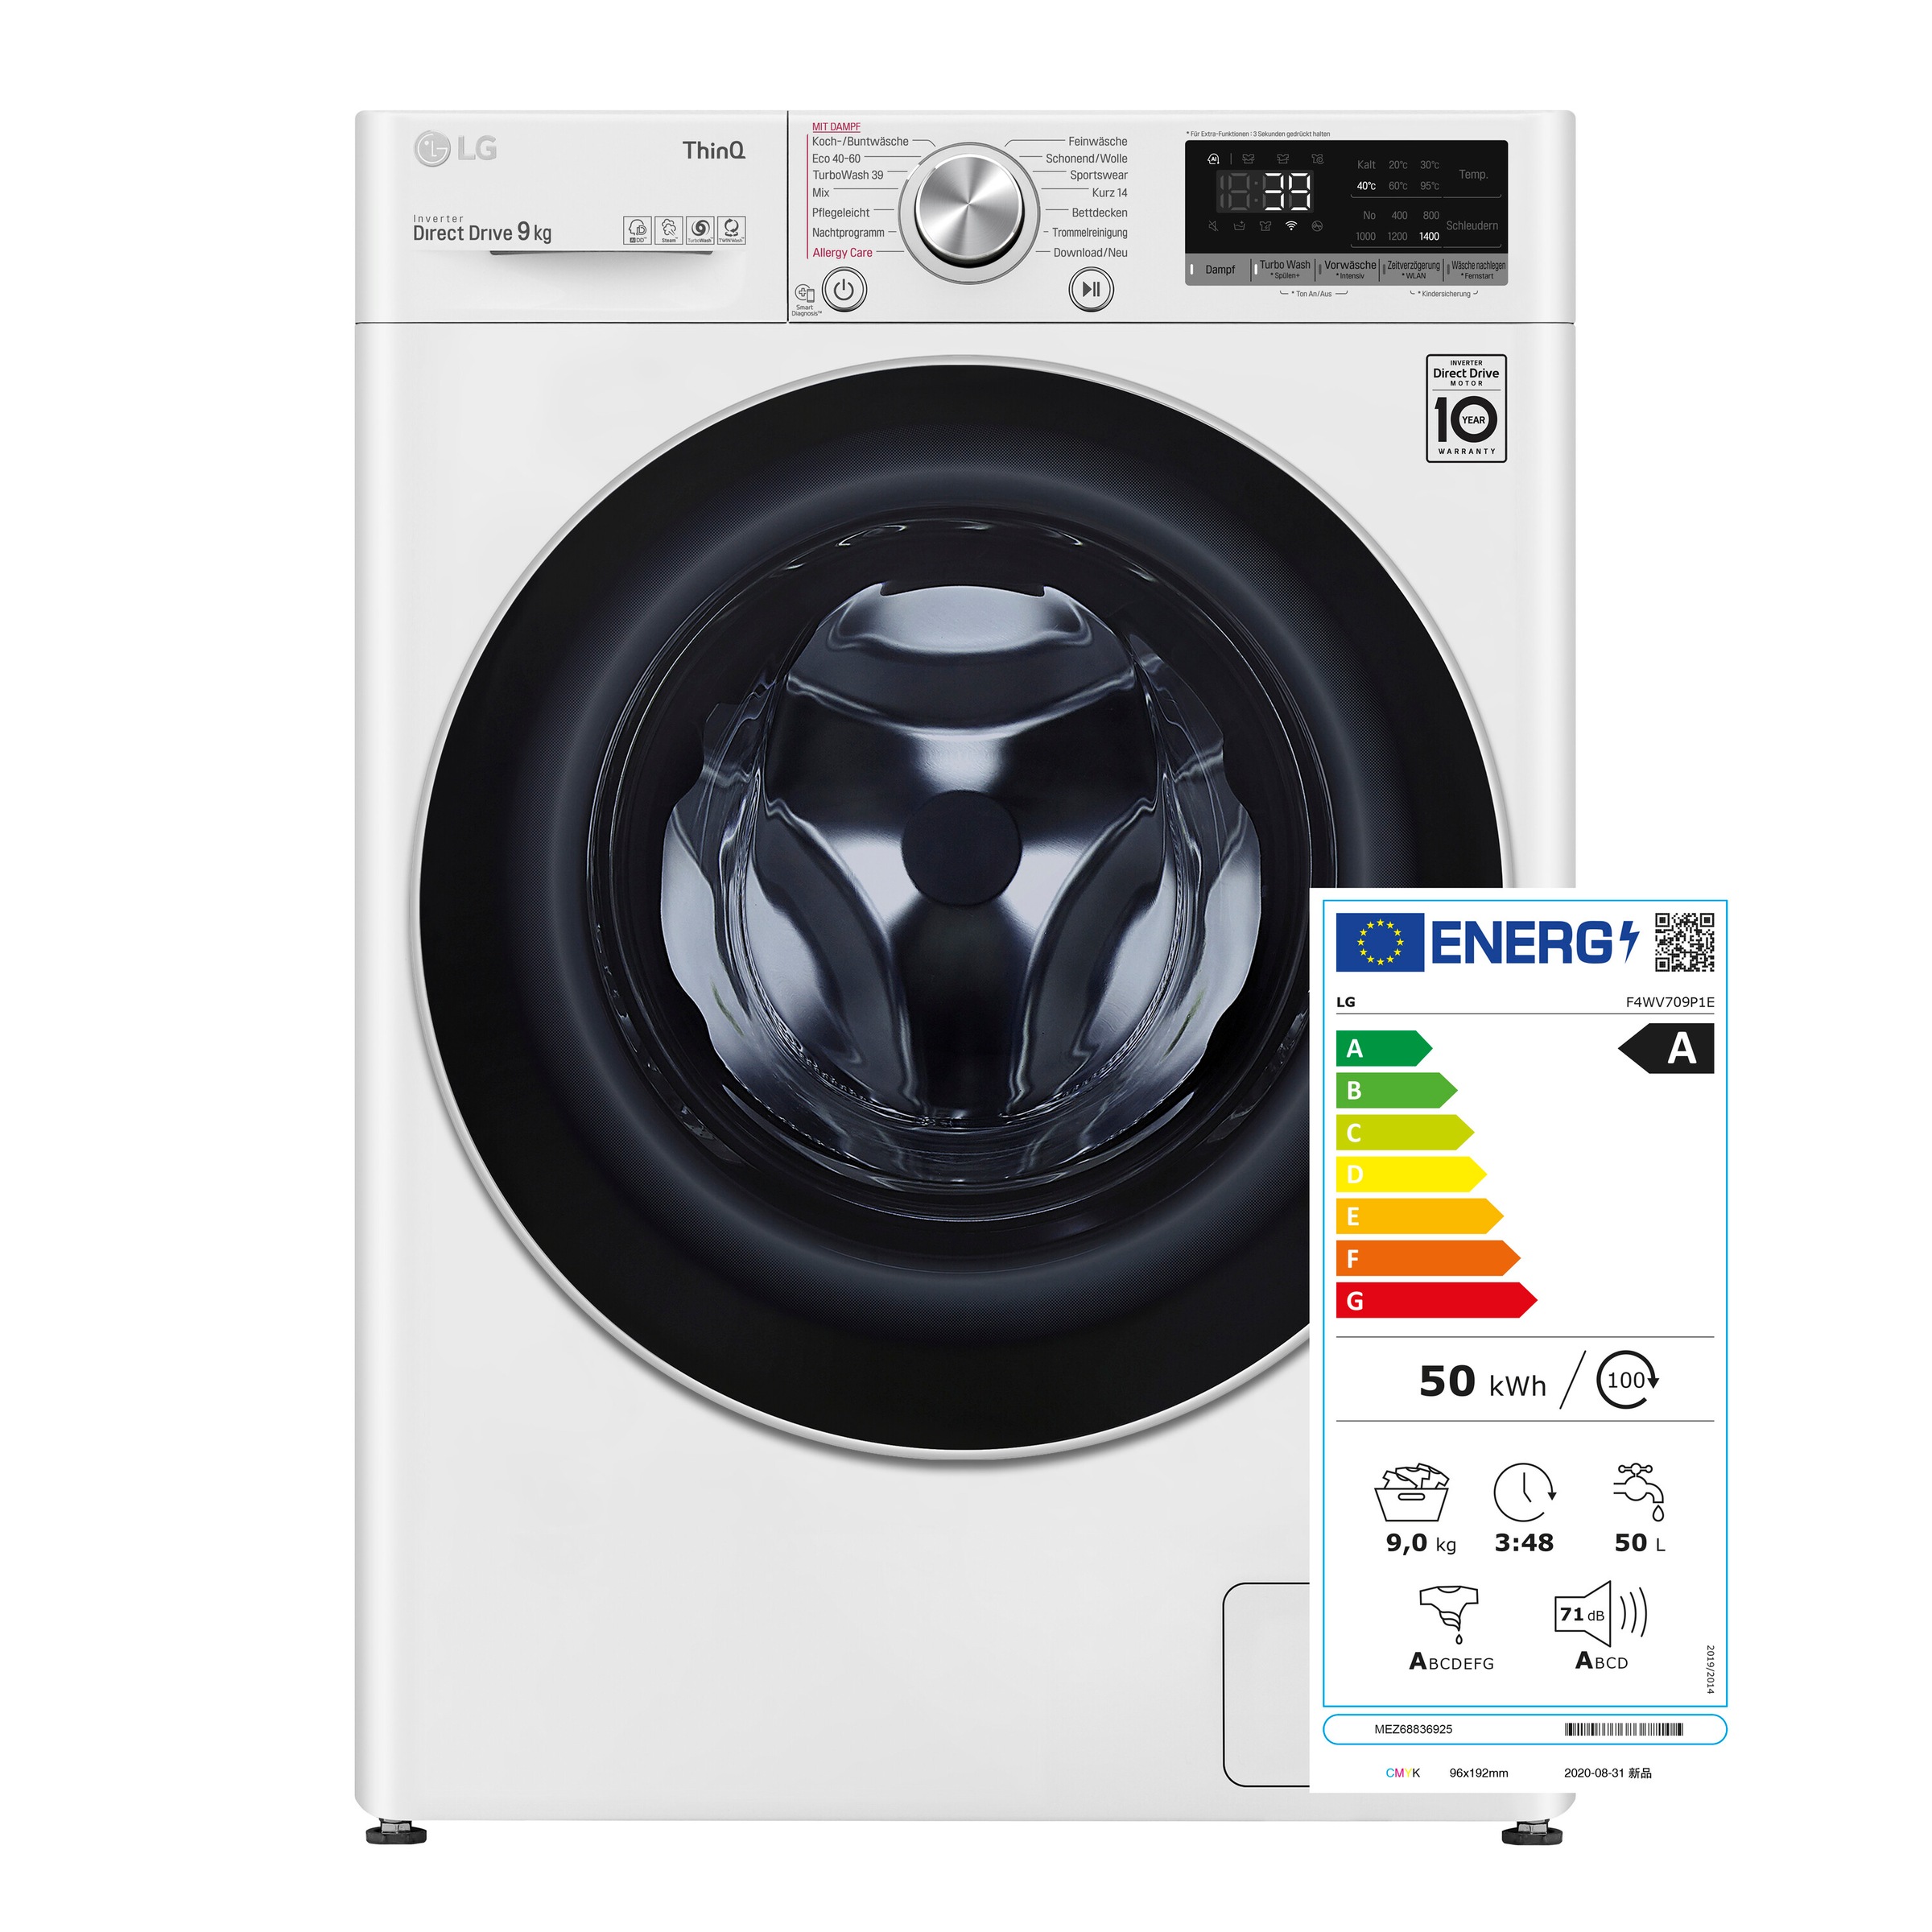 Waschmaschine, Shop 1400 9 OTTO Online kg, F4WV709P1E, LG U/min im